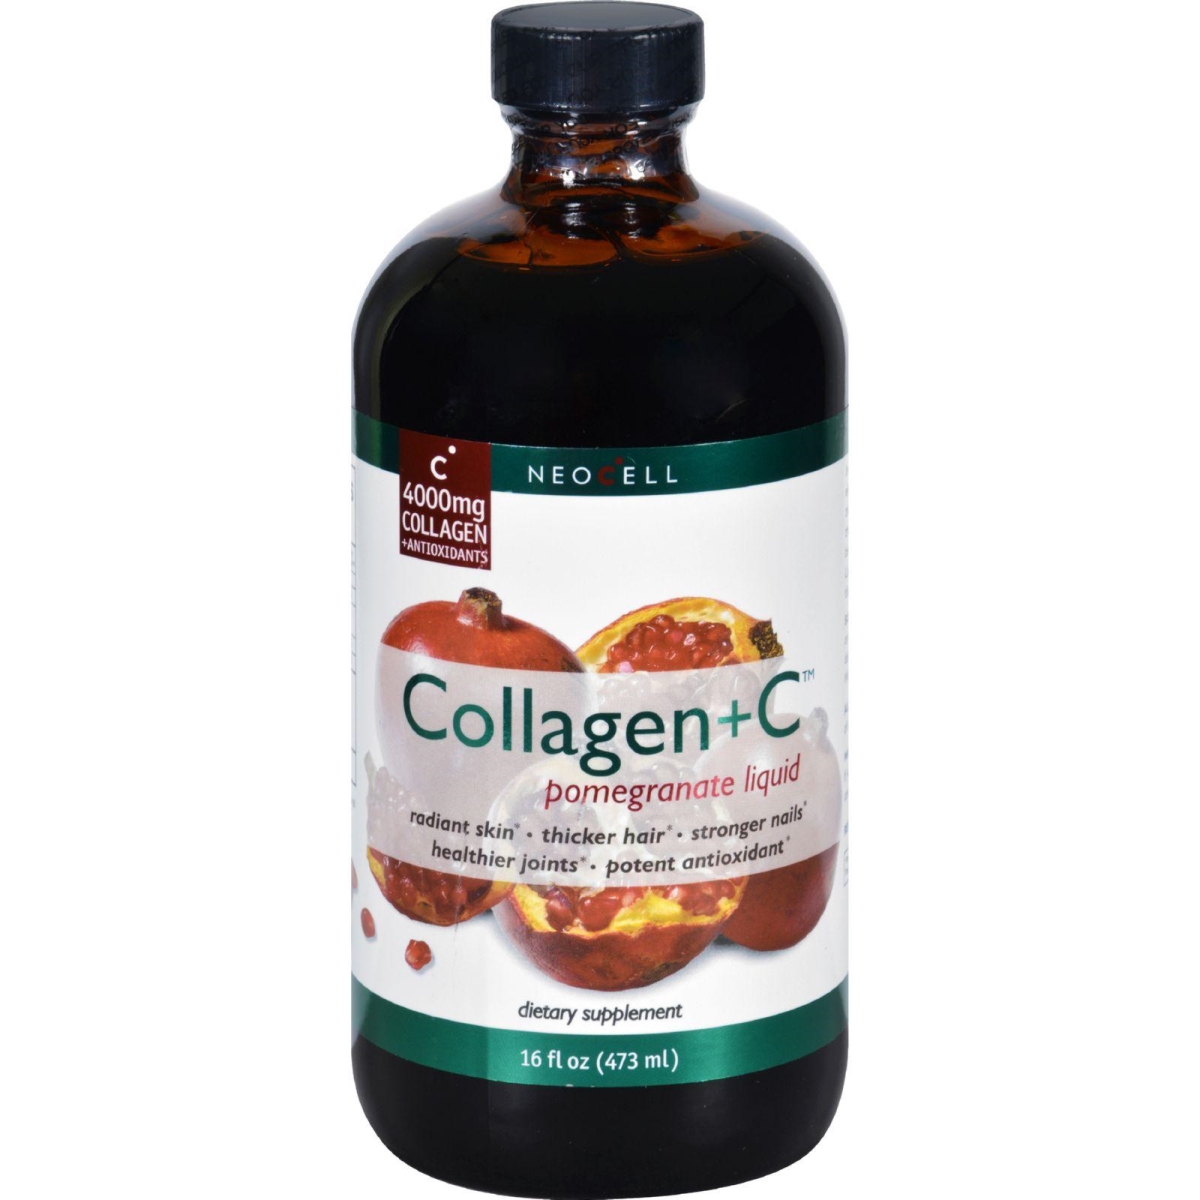 Hg1127984 16 Oz Collagen Plus Vitamin C - Pomegranate Liquid